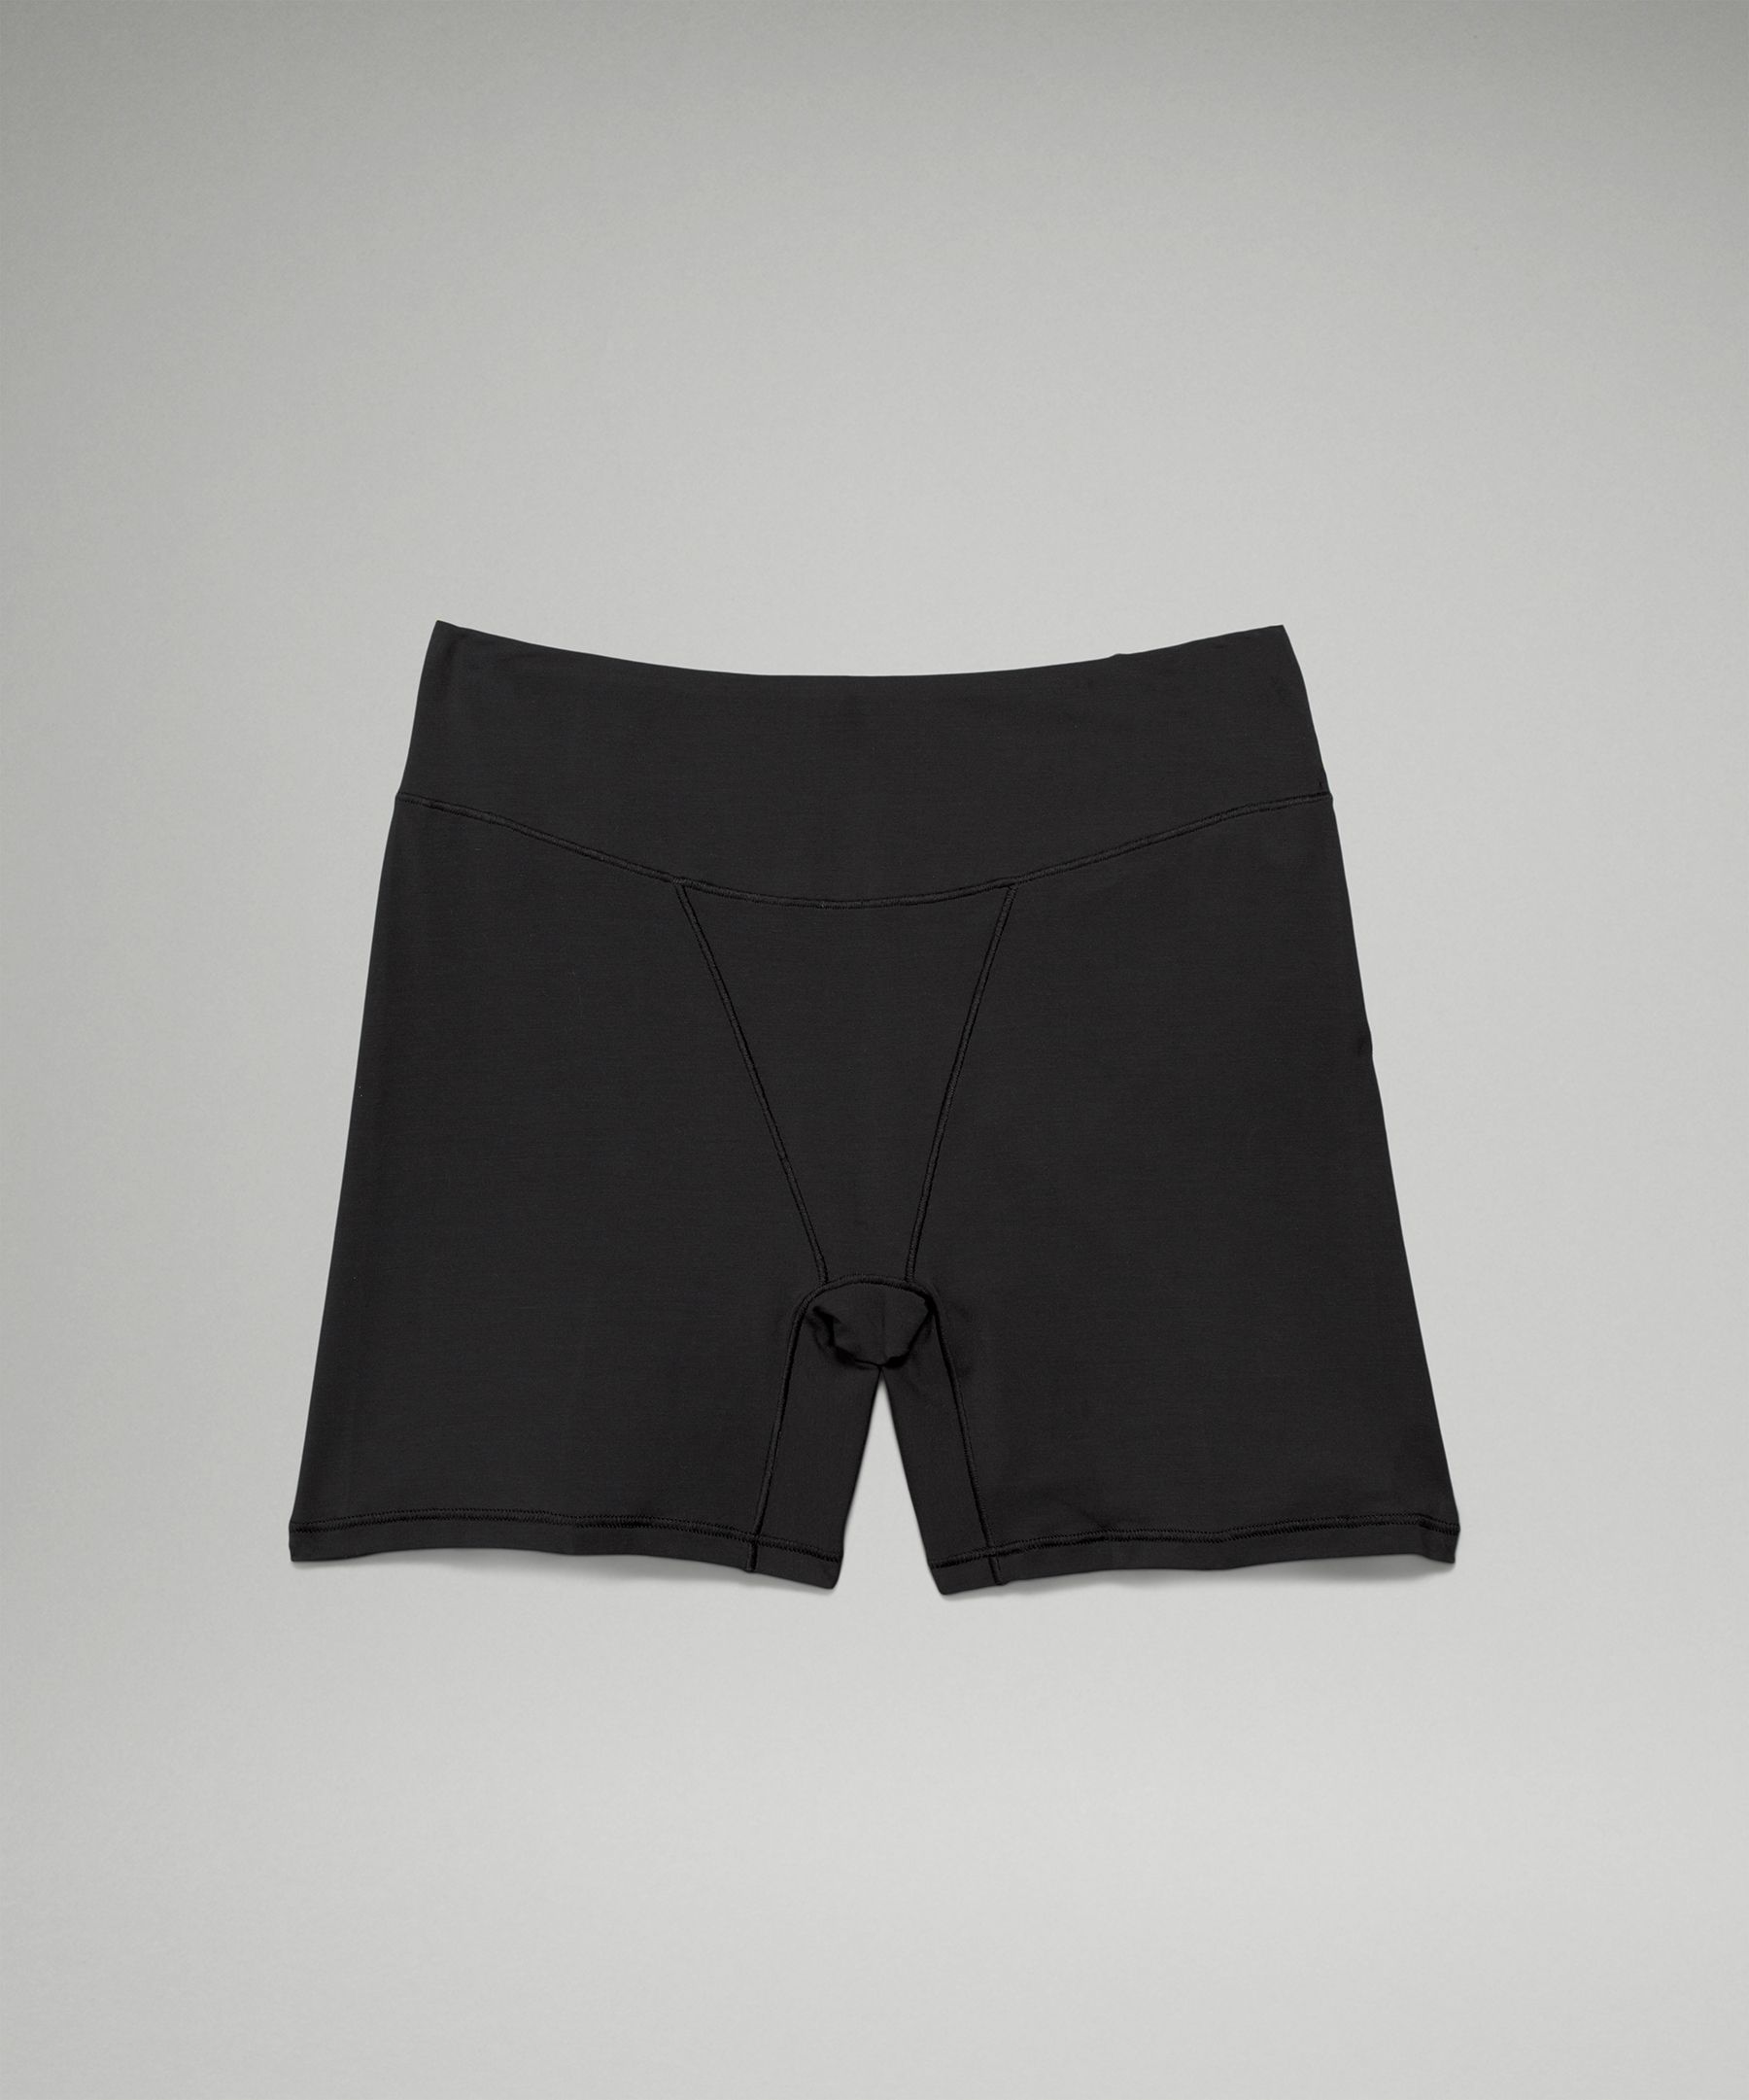 Lululemon UnderEase Super-High-Rise Shortie Underwear